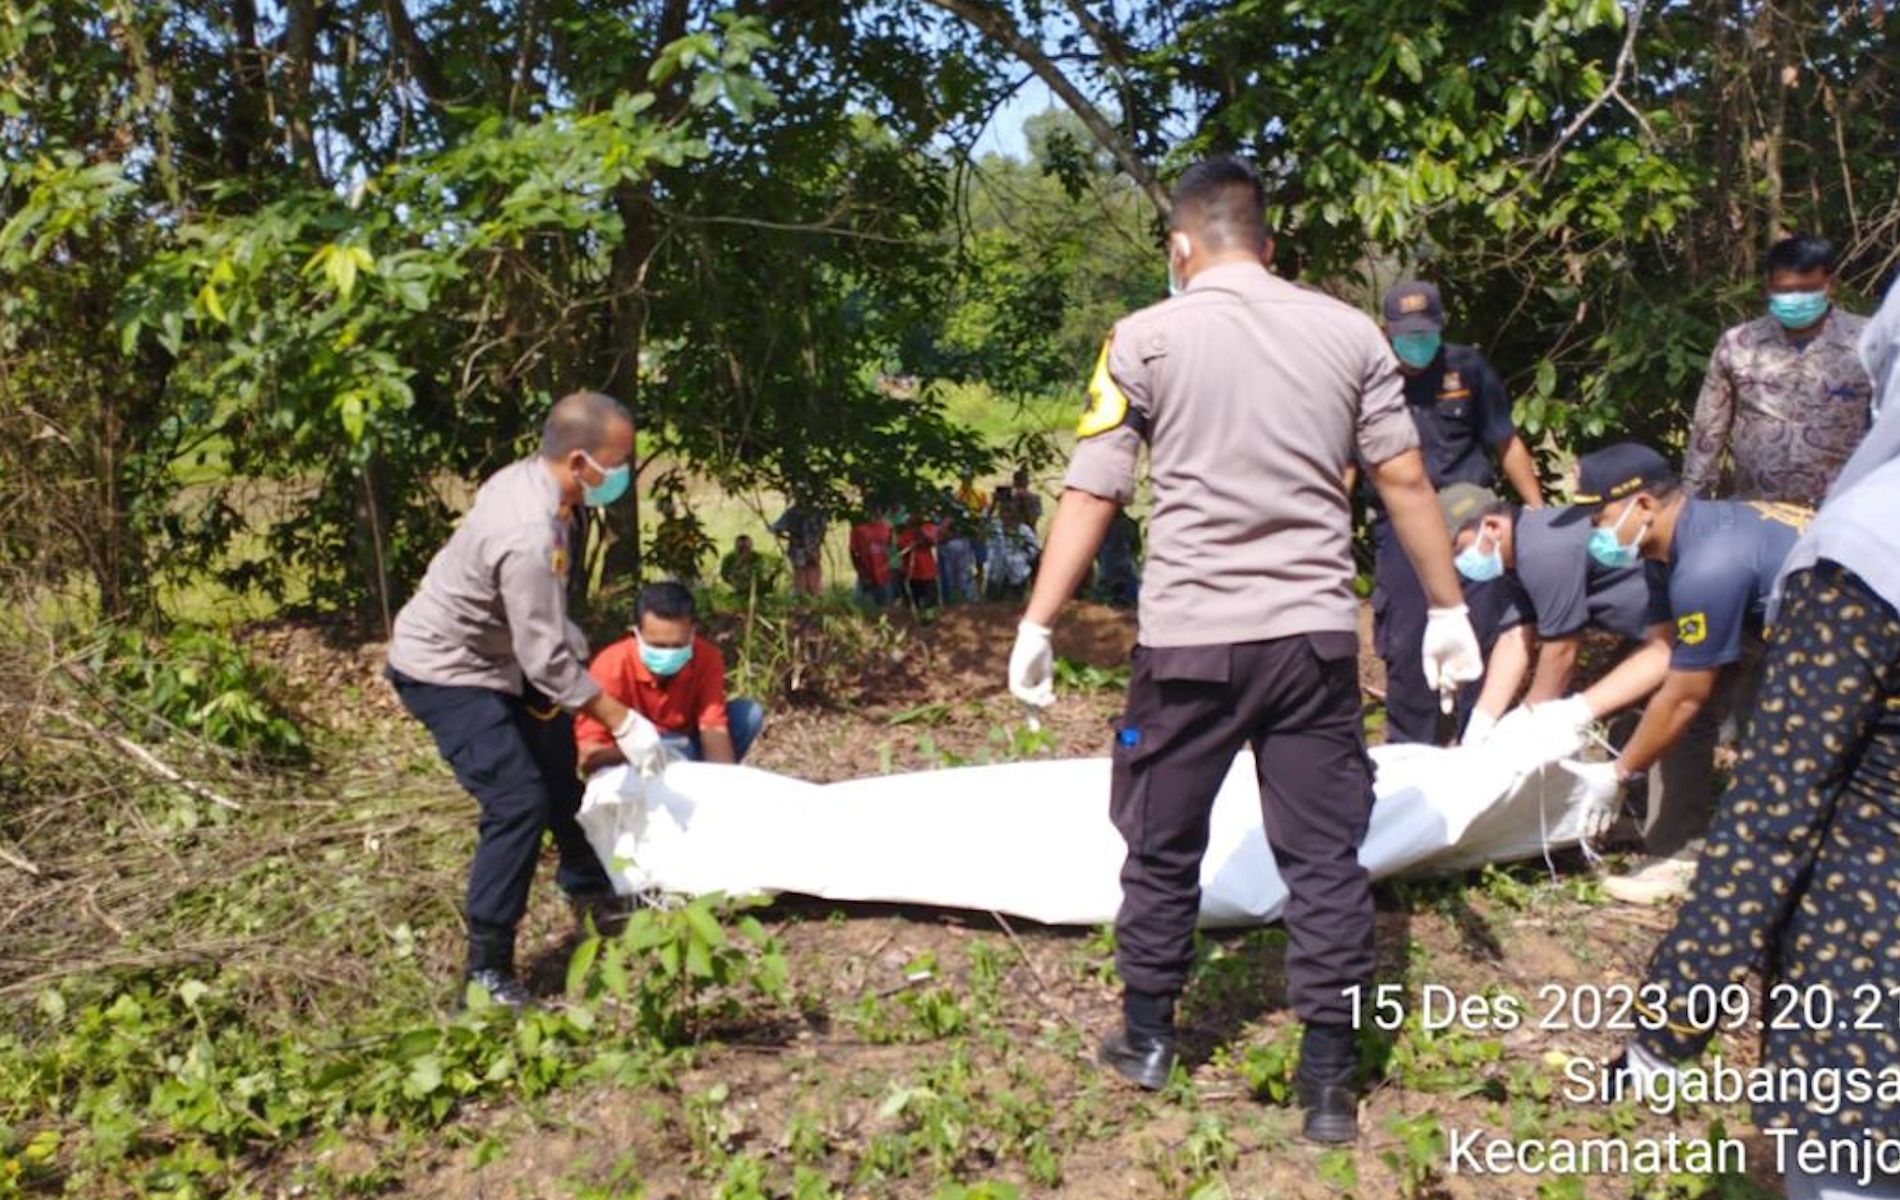 Warga Desa Singabangsa, Kecamatan Tenjo, Kabupaten Bogor digegerkan adanya penemuan mayat pria tanpa identitas.